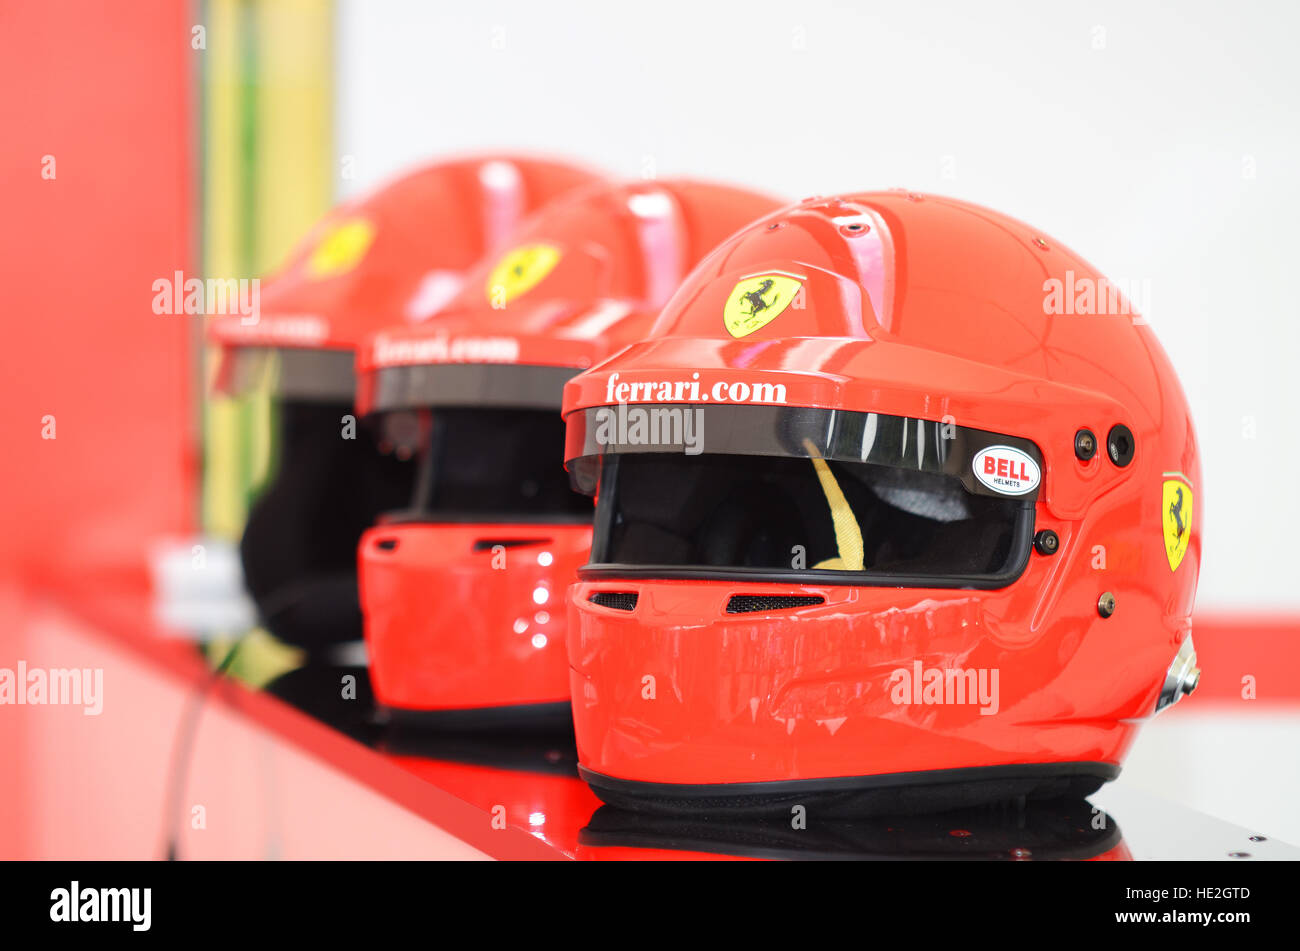 Eine Reihe von Crashhelmen der Marke Ferrari. Sicherheitsausrüstung Stockfoto